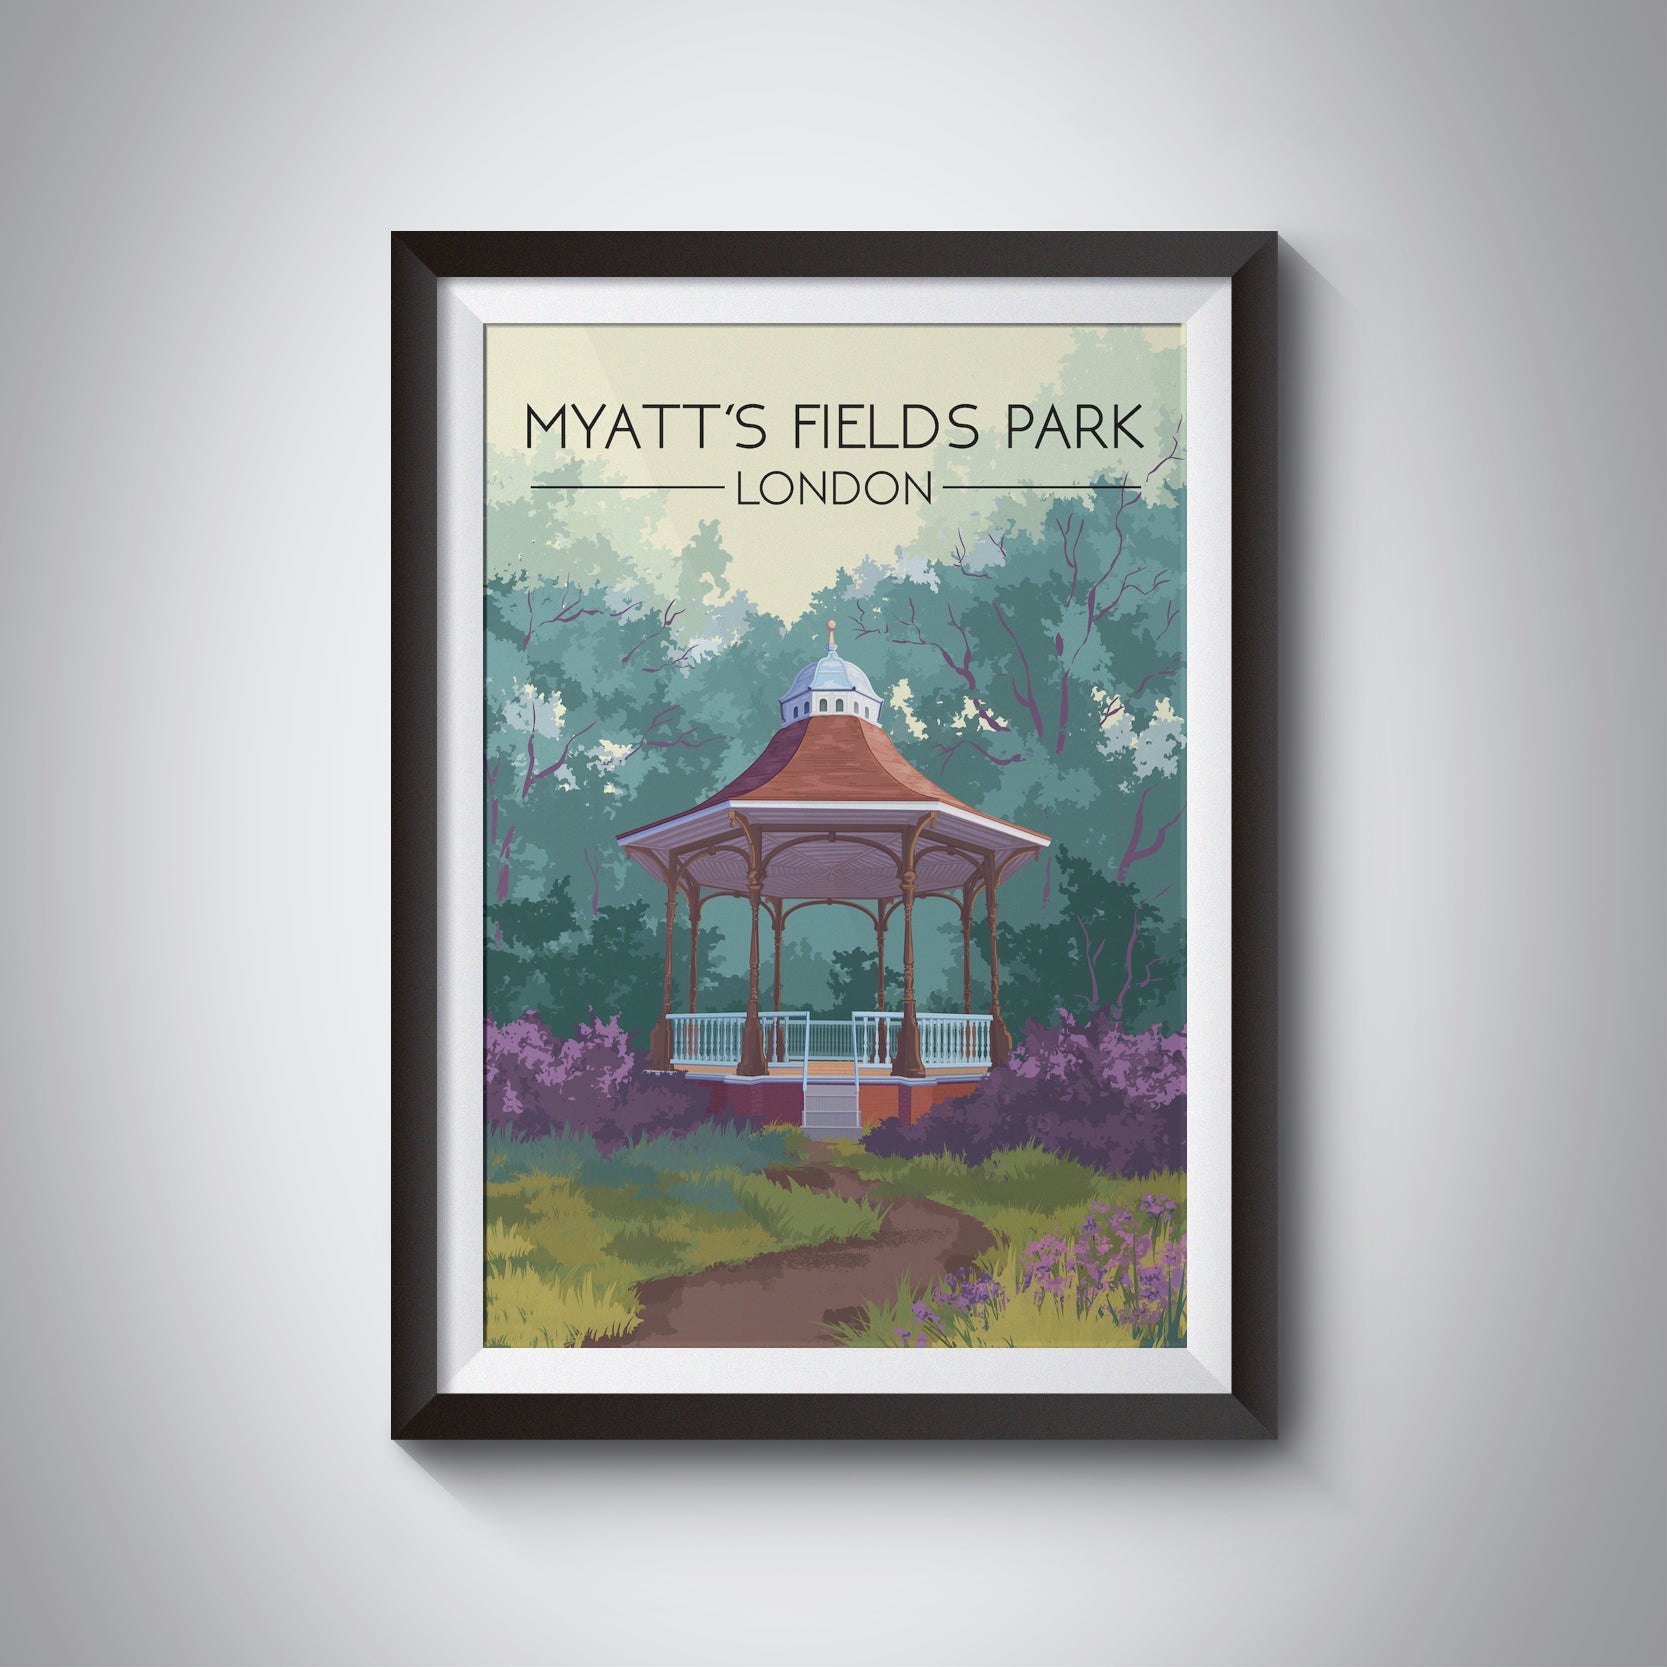 Myatt's Fields Park London Travel Poster